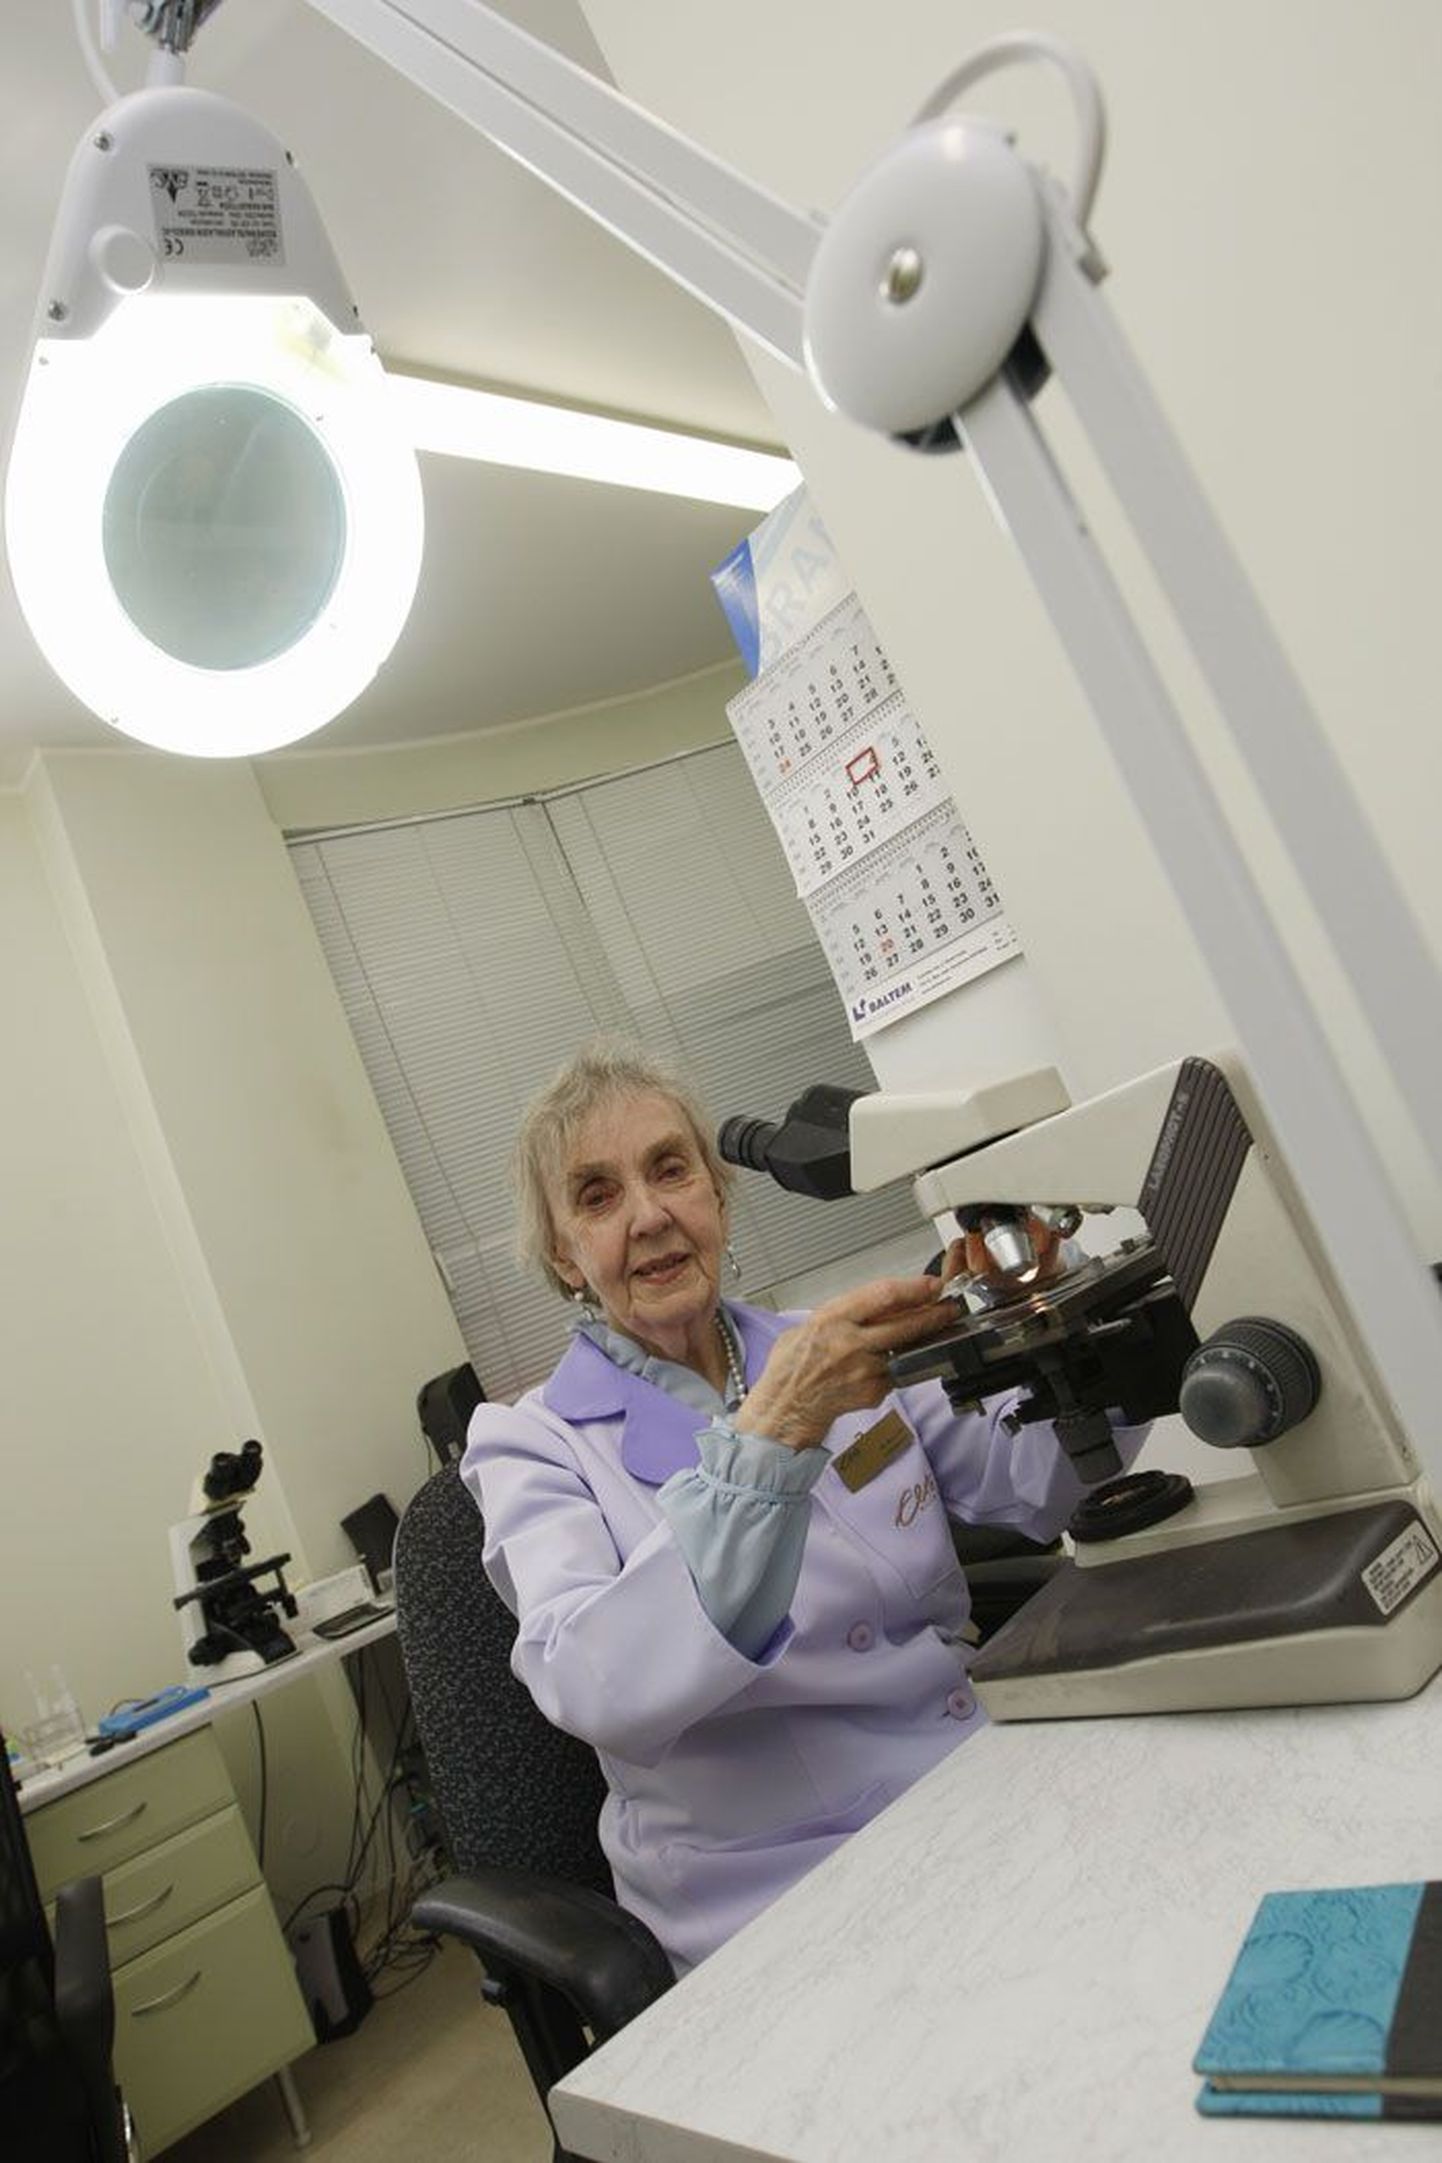 Пиа-Астрид Отт проработала врачом в лаборатории 62 года. Она утверждает, что у нее очень интересная работа, которая никогда ей не надоедает, только бы всегда было достаточно хороших доноров спермы.